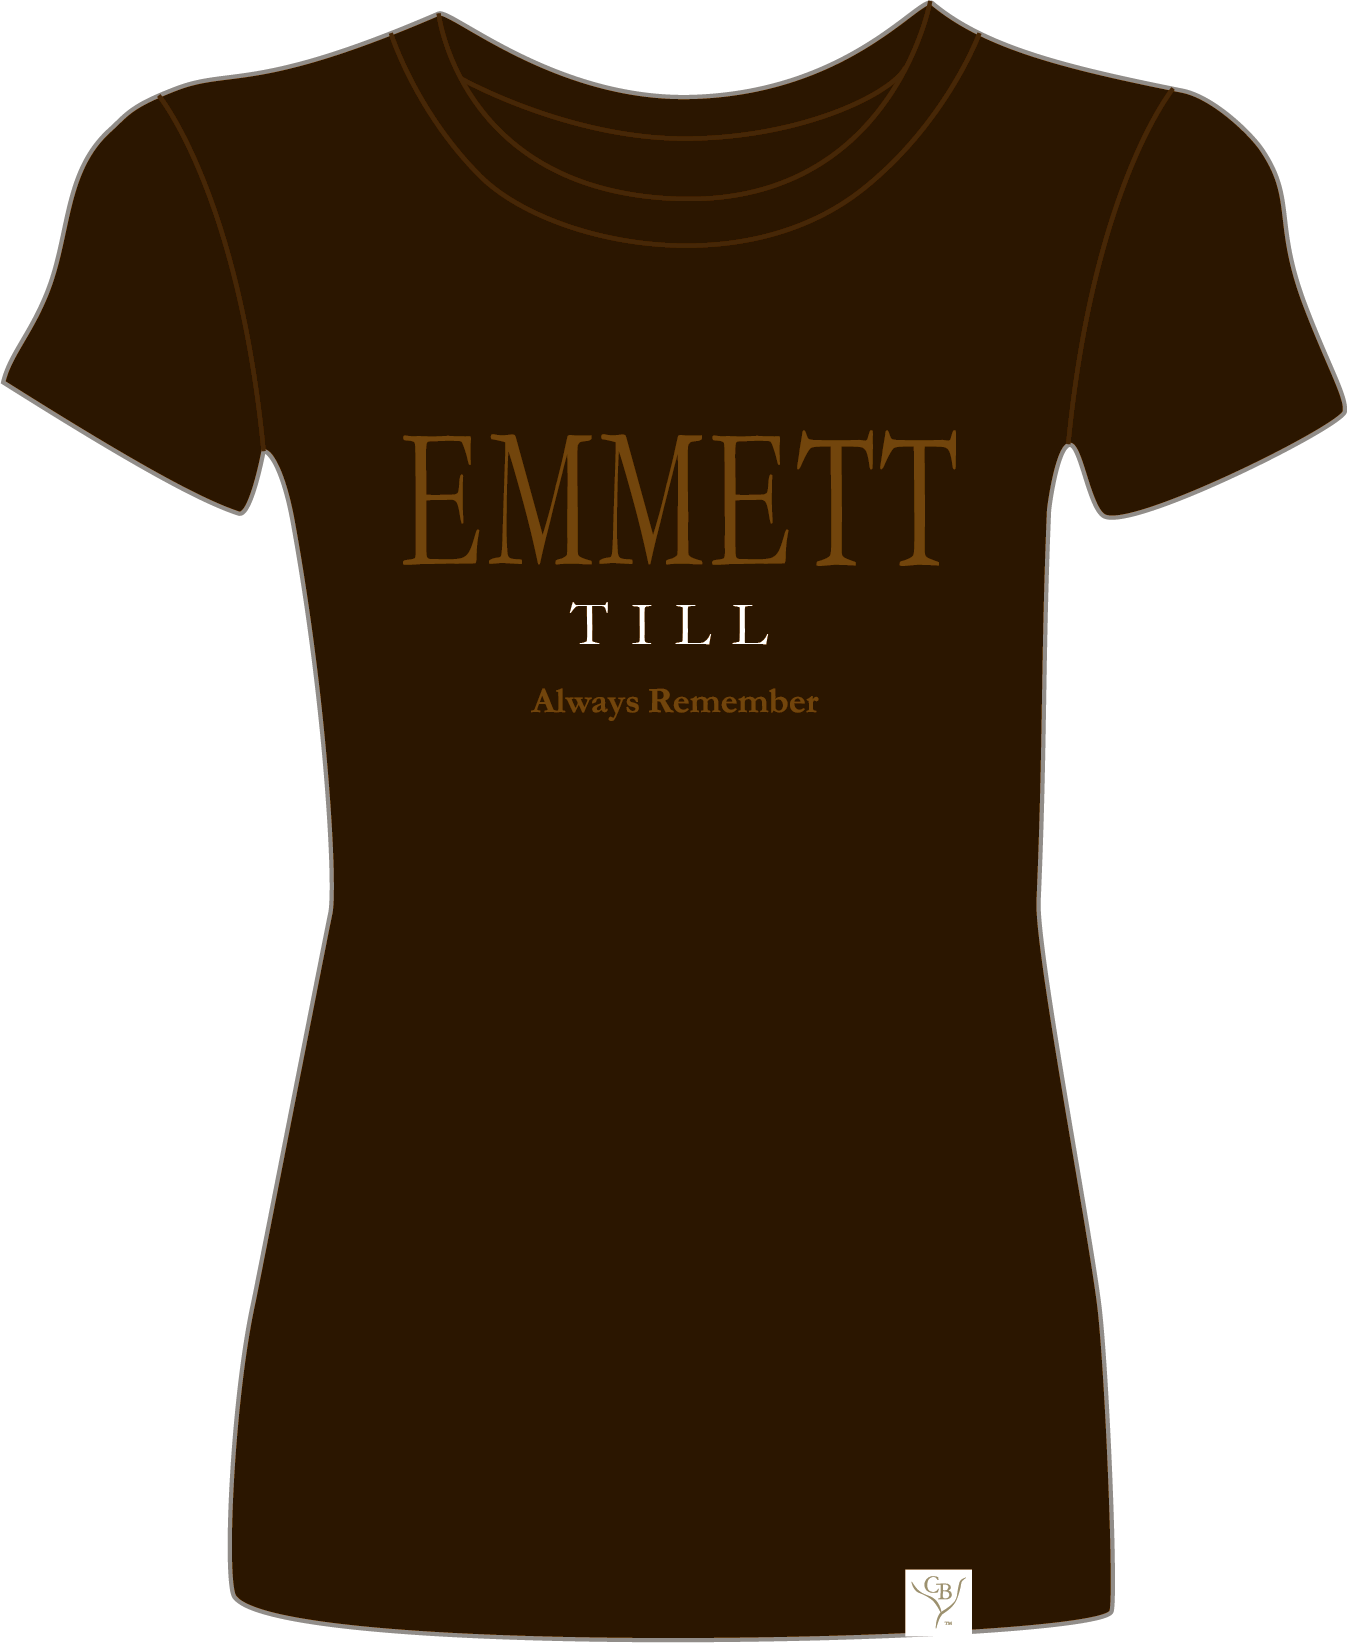 The Emmett W